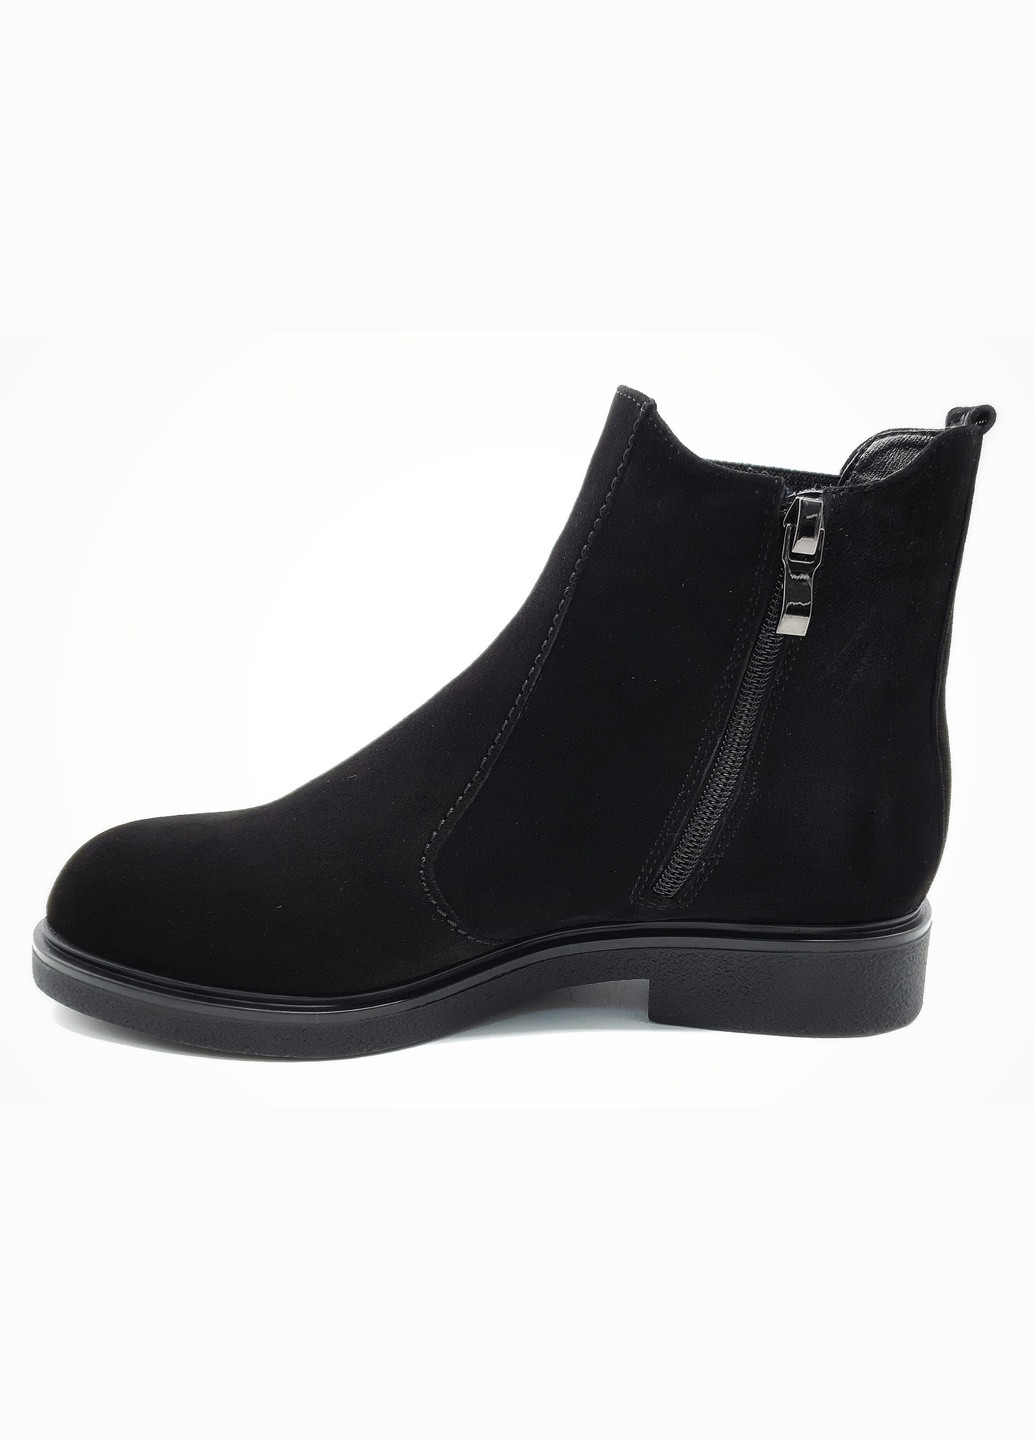 Осенние женские ботинки зимние черные замшевые p-11-4 25,5 см (р) patterns